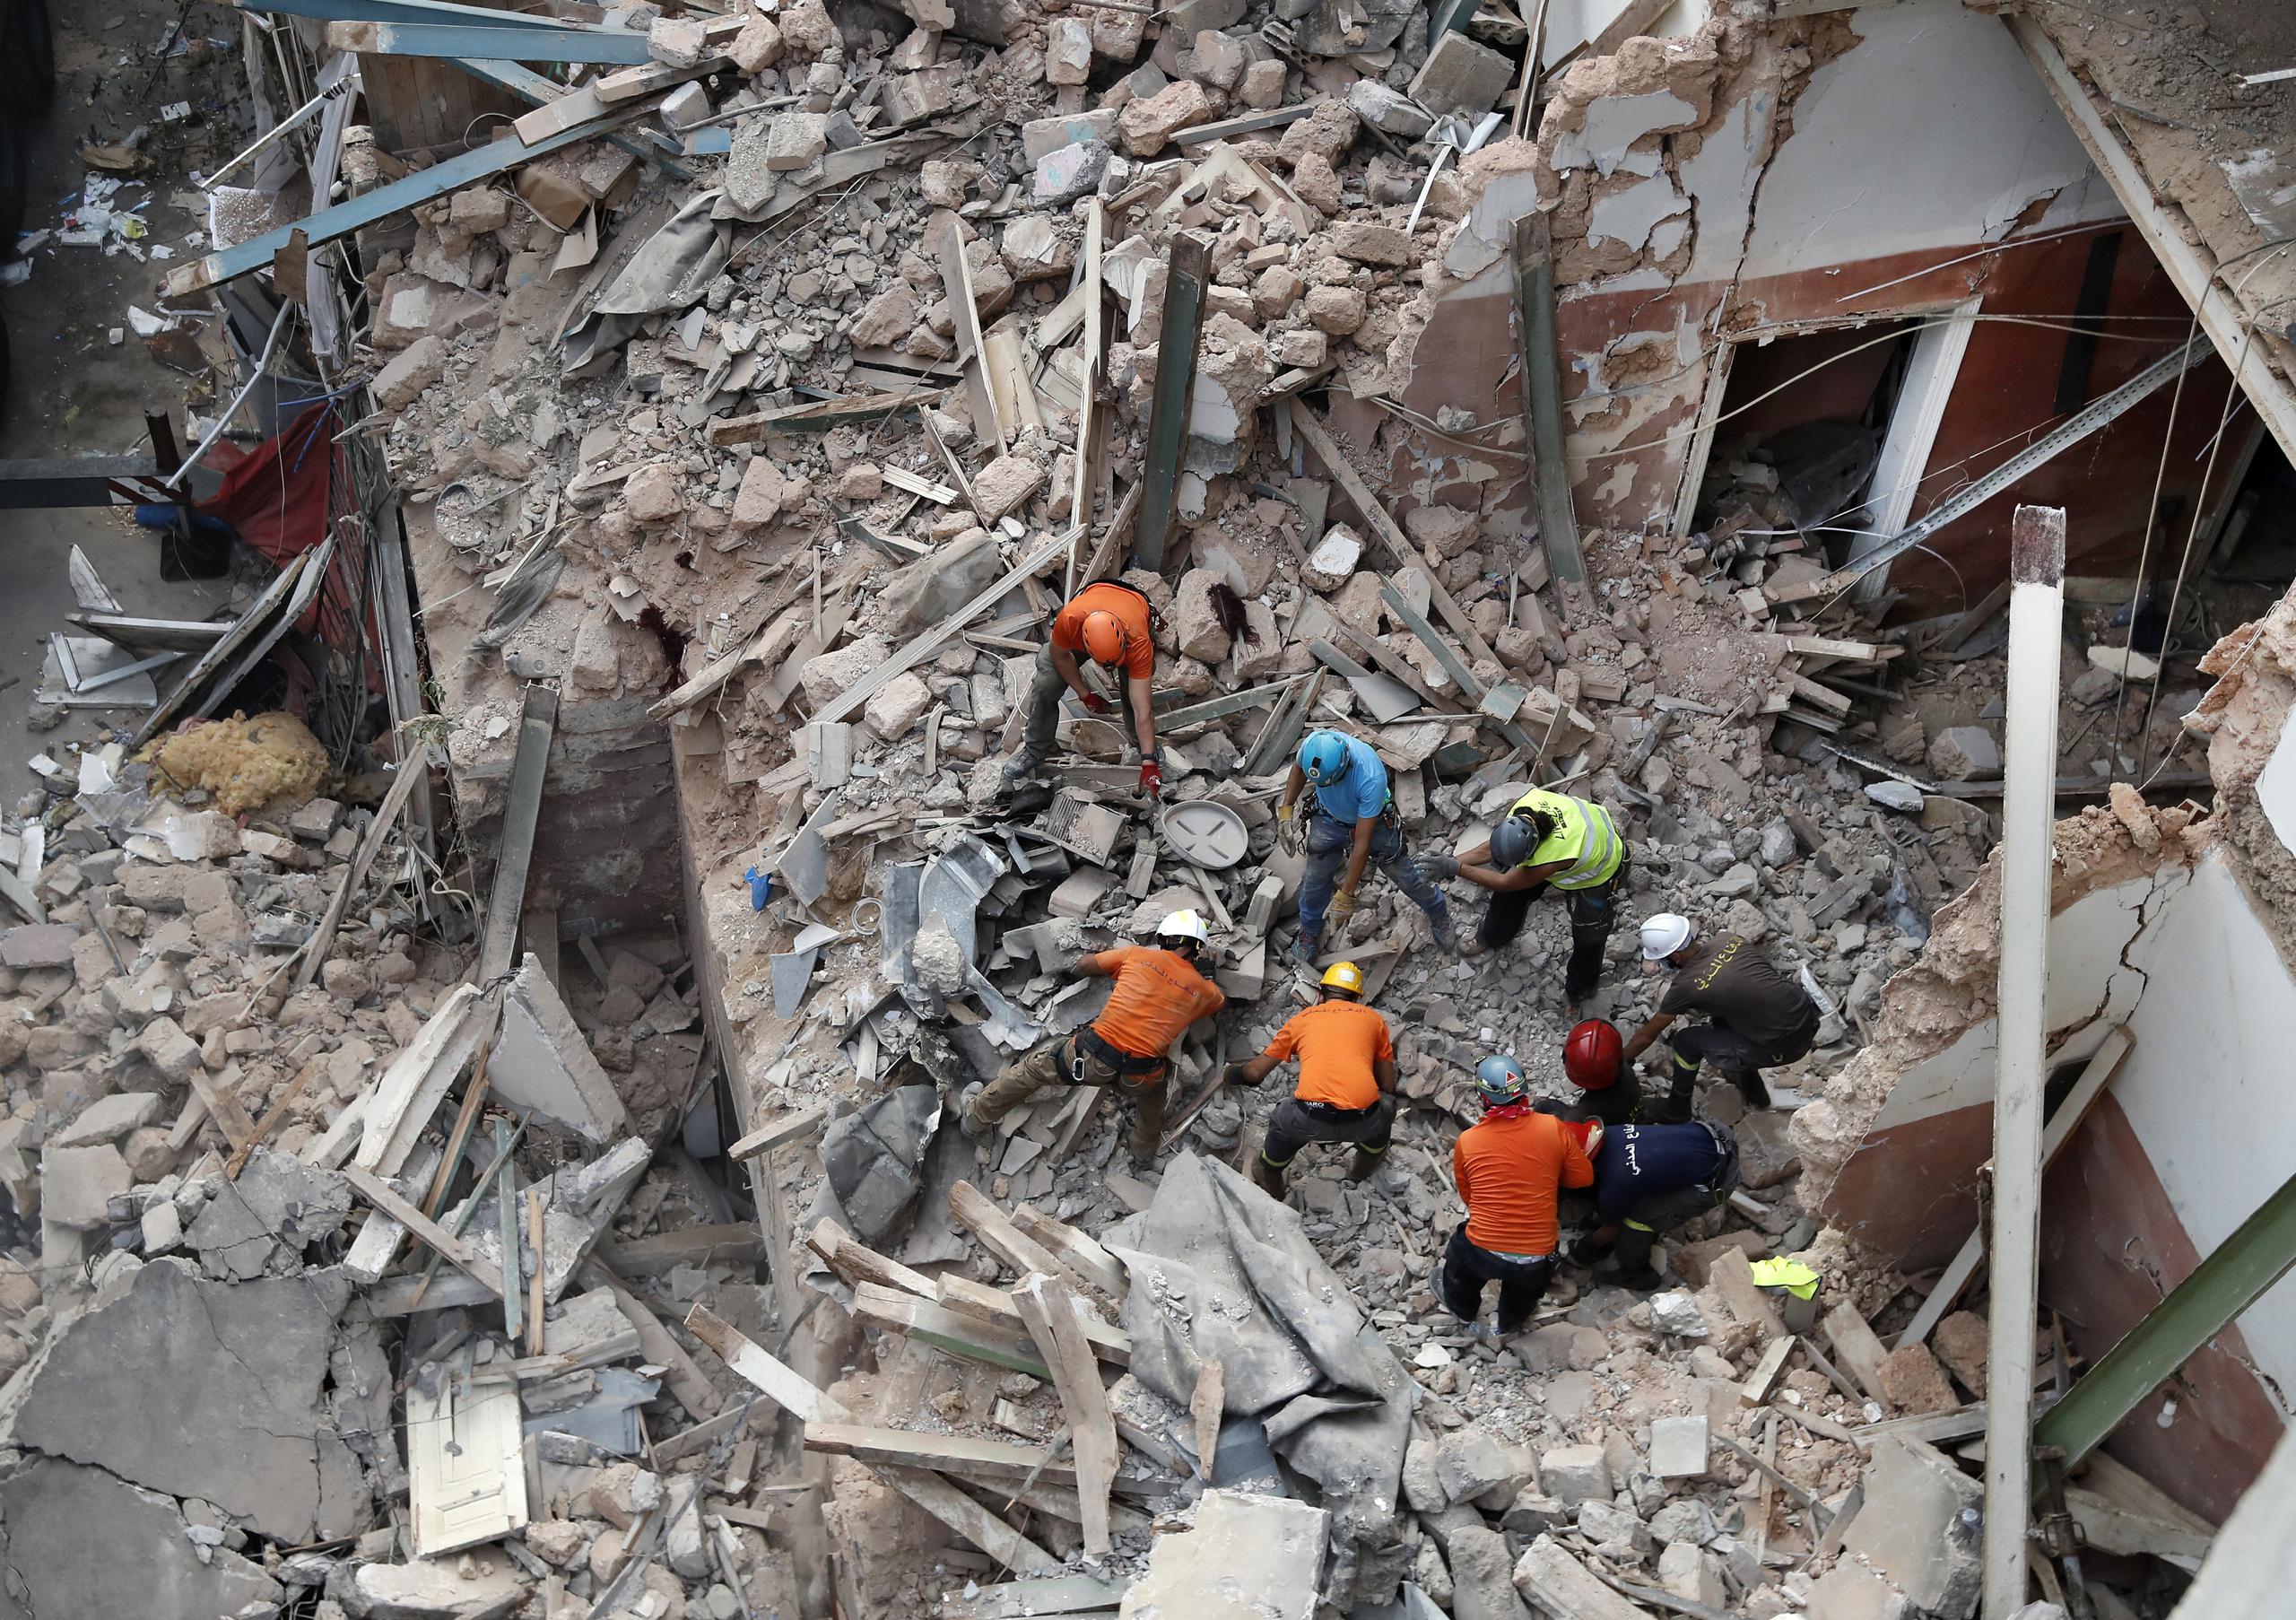 Rescatistas libaneses y chilenos buscan a un sobreviviente entre los escombros de un edificio derruido tras detectar señales.